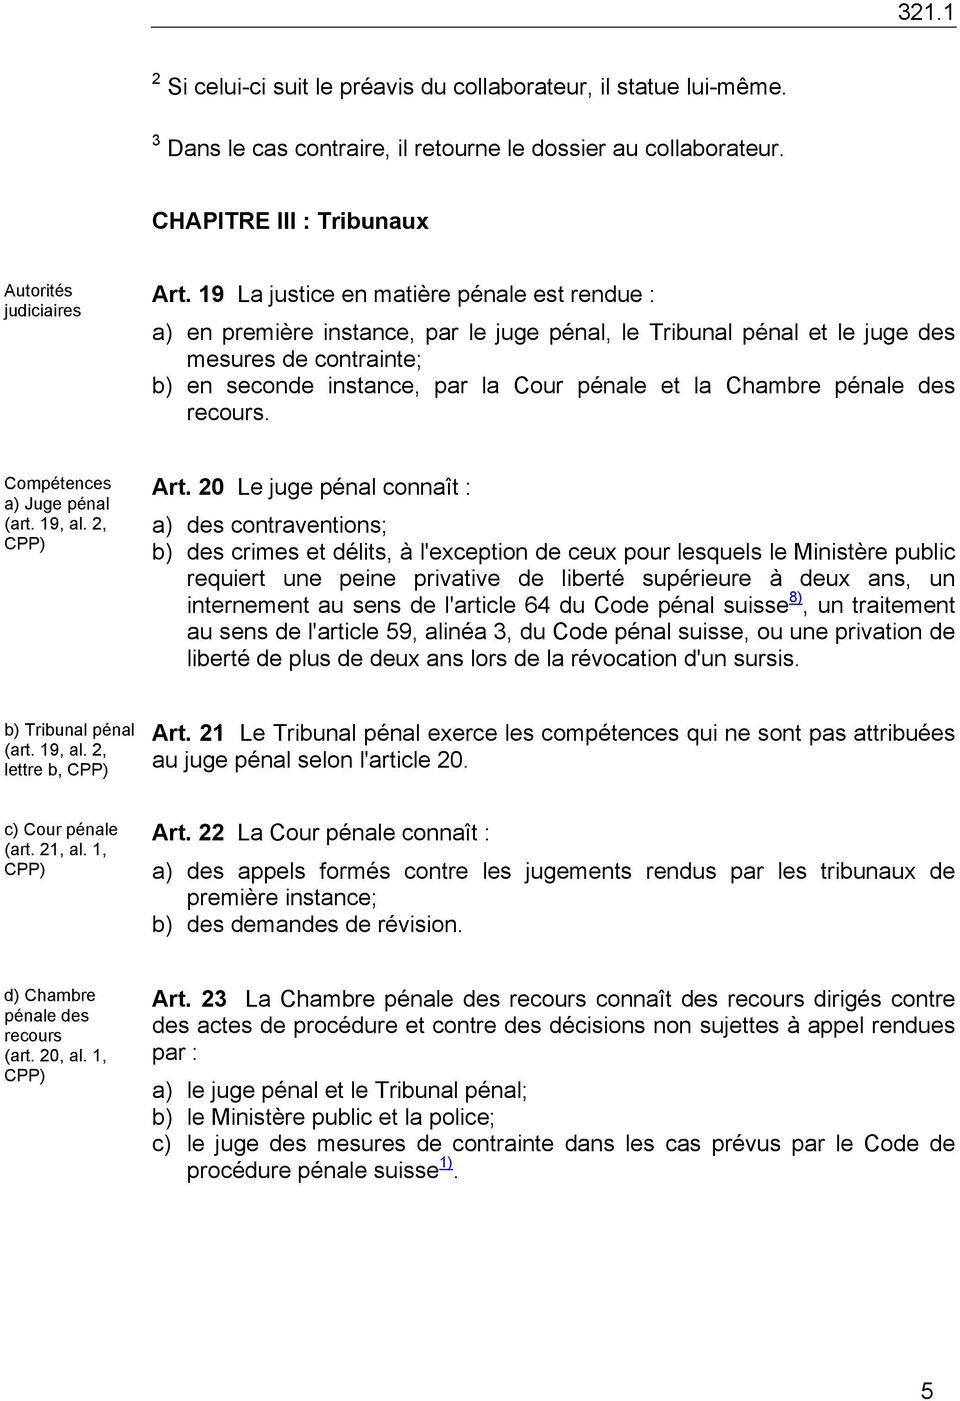 Chambre pénale des recours. Compétences a) Juge pénal (art. 19, al. 2, CPP) Art.